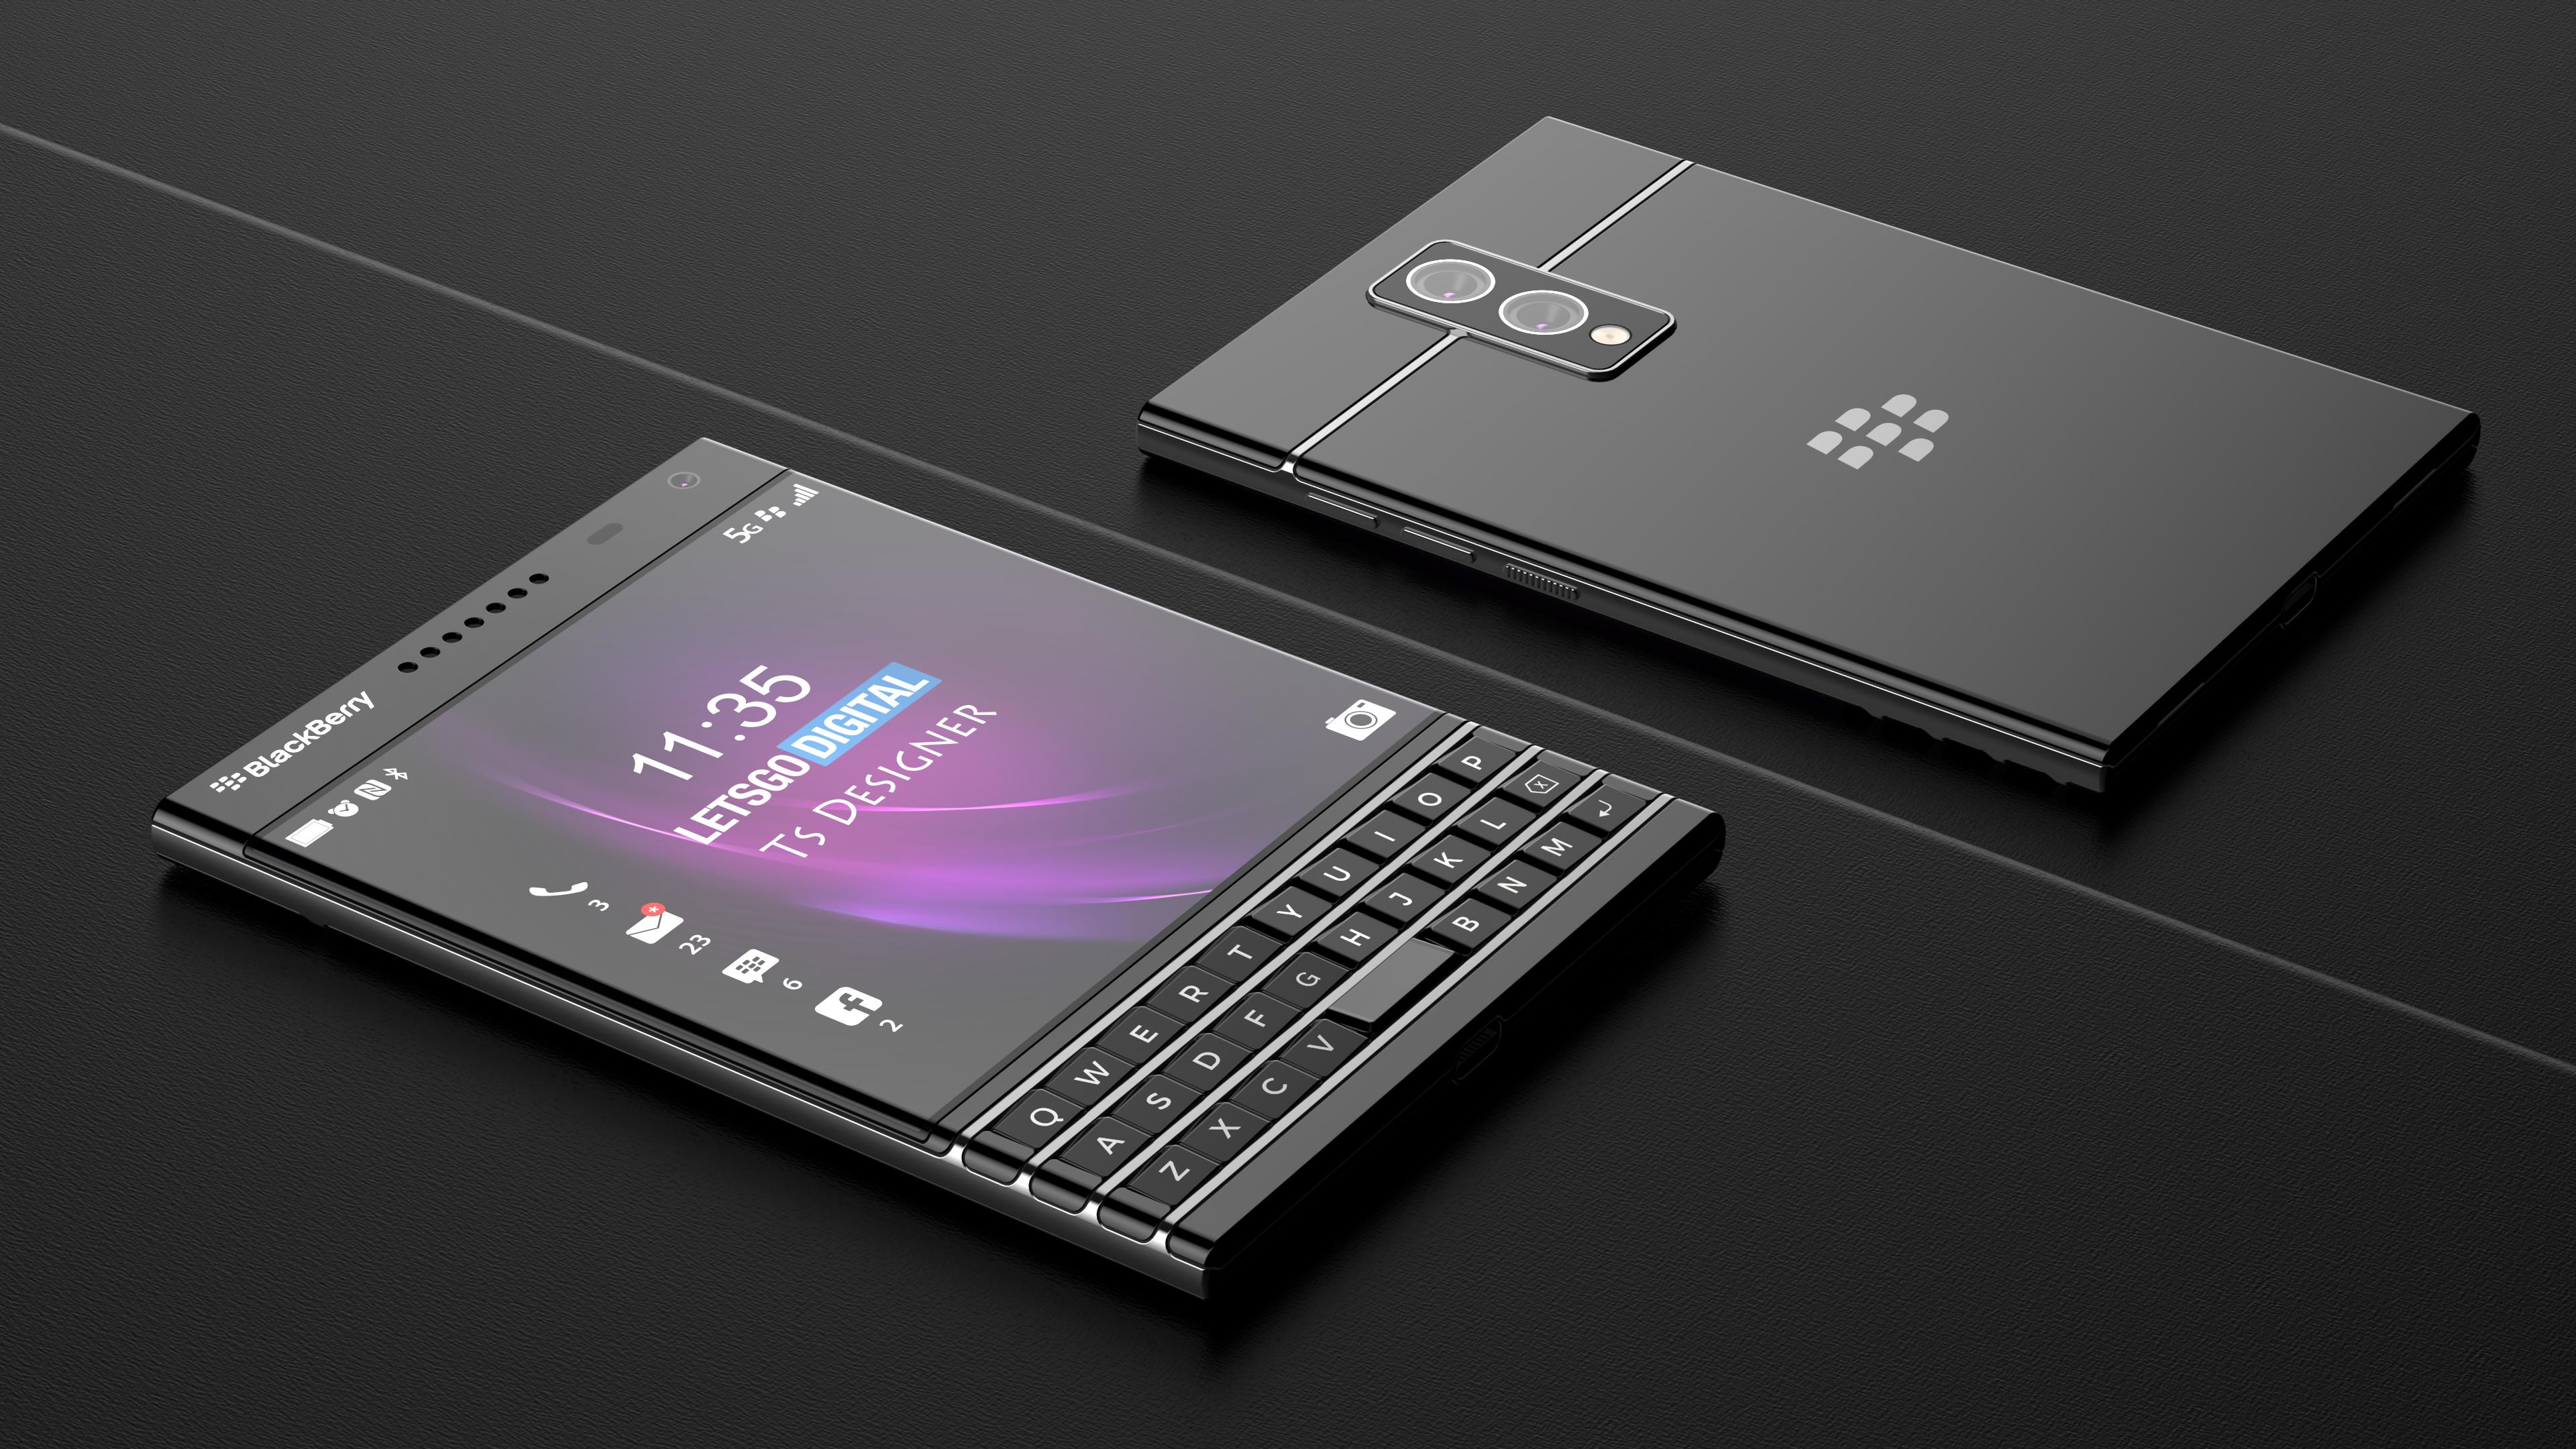 Teléfono BlackBerry Passport 2 5G con teclado físico